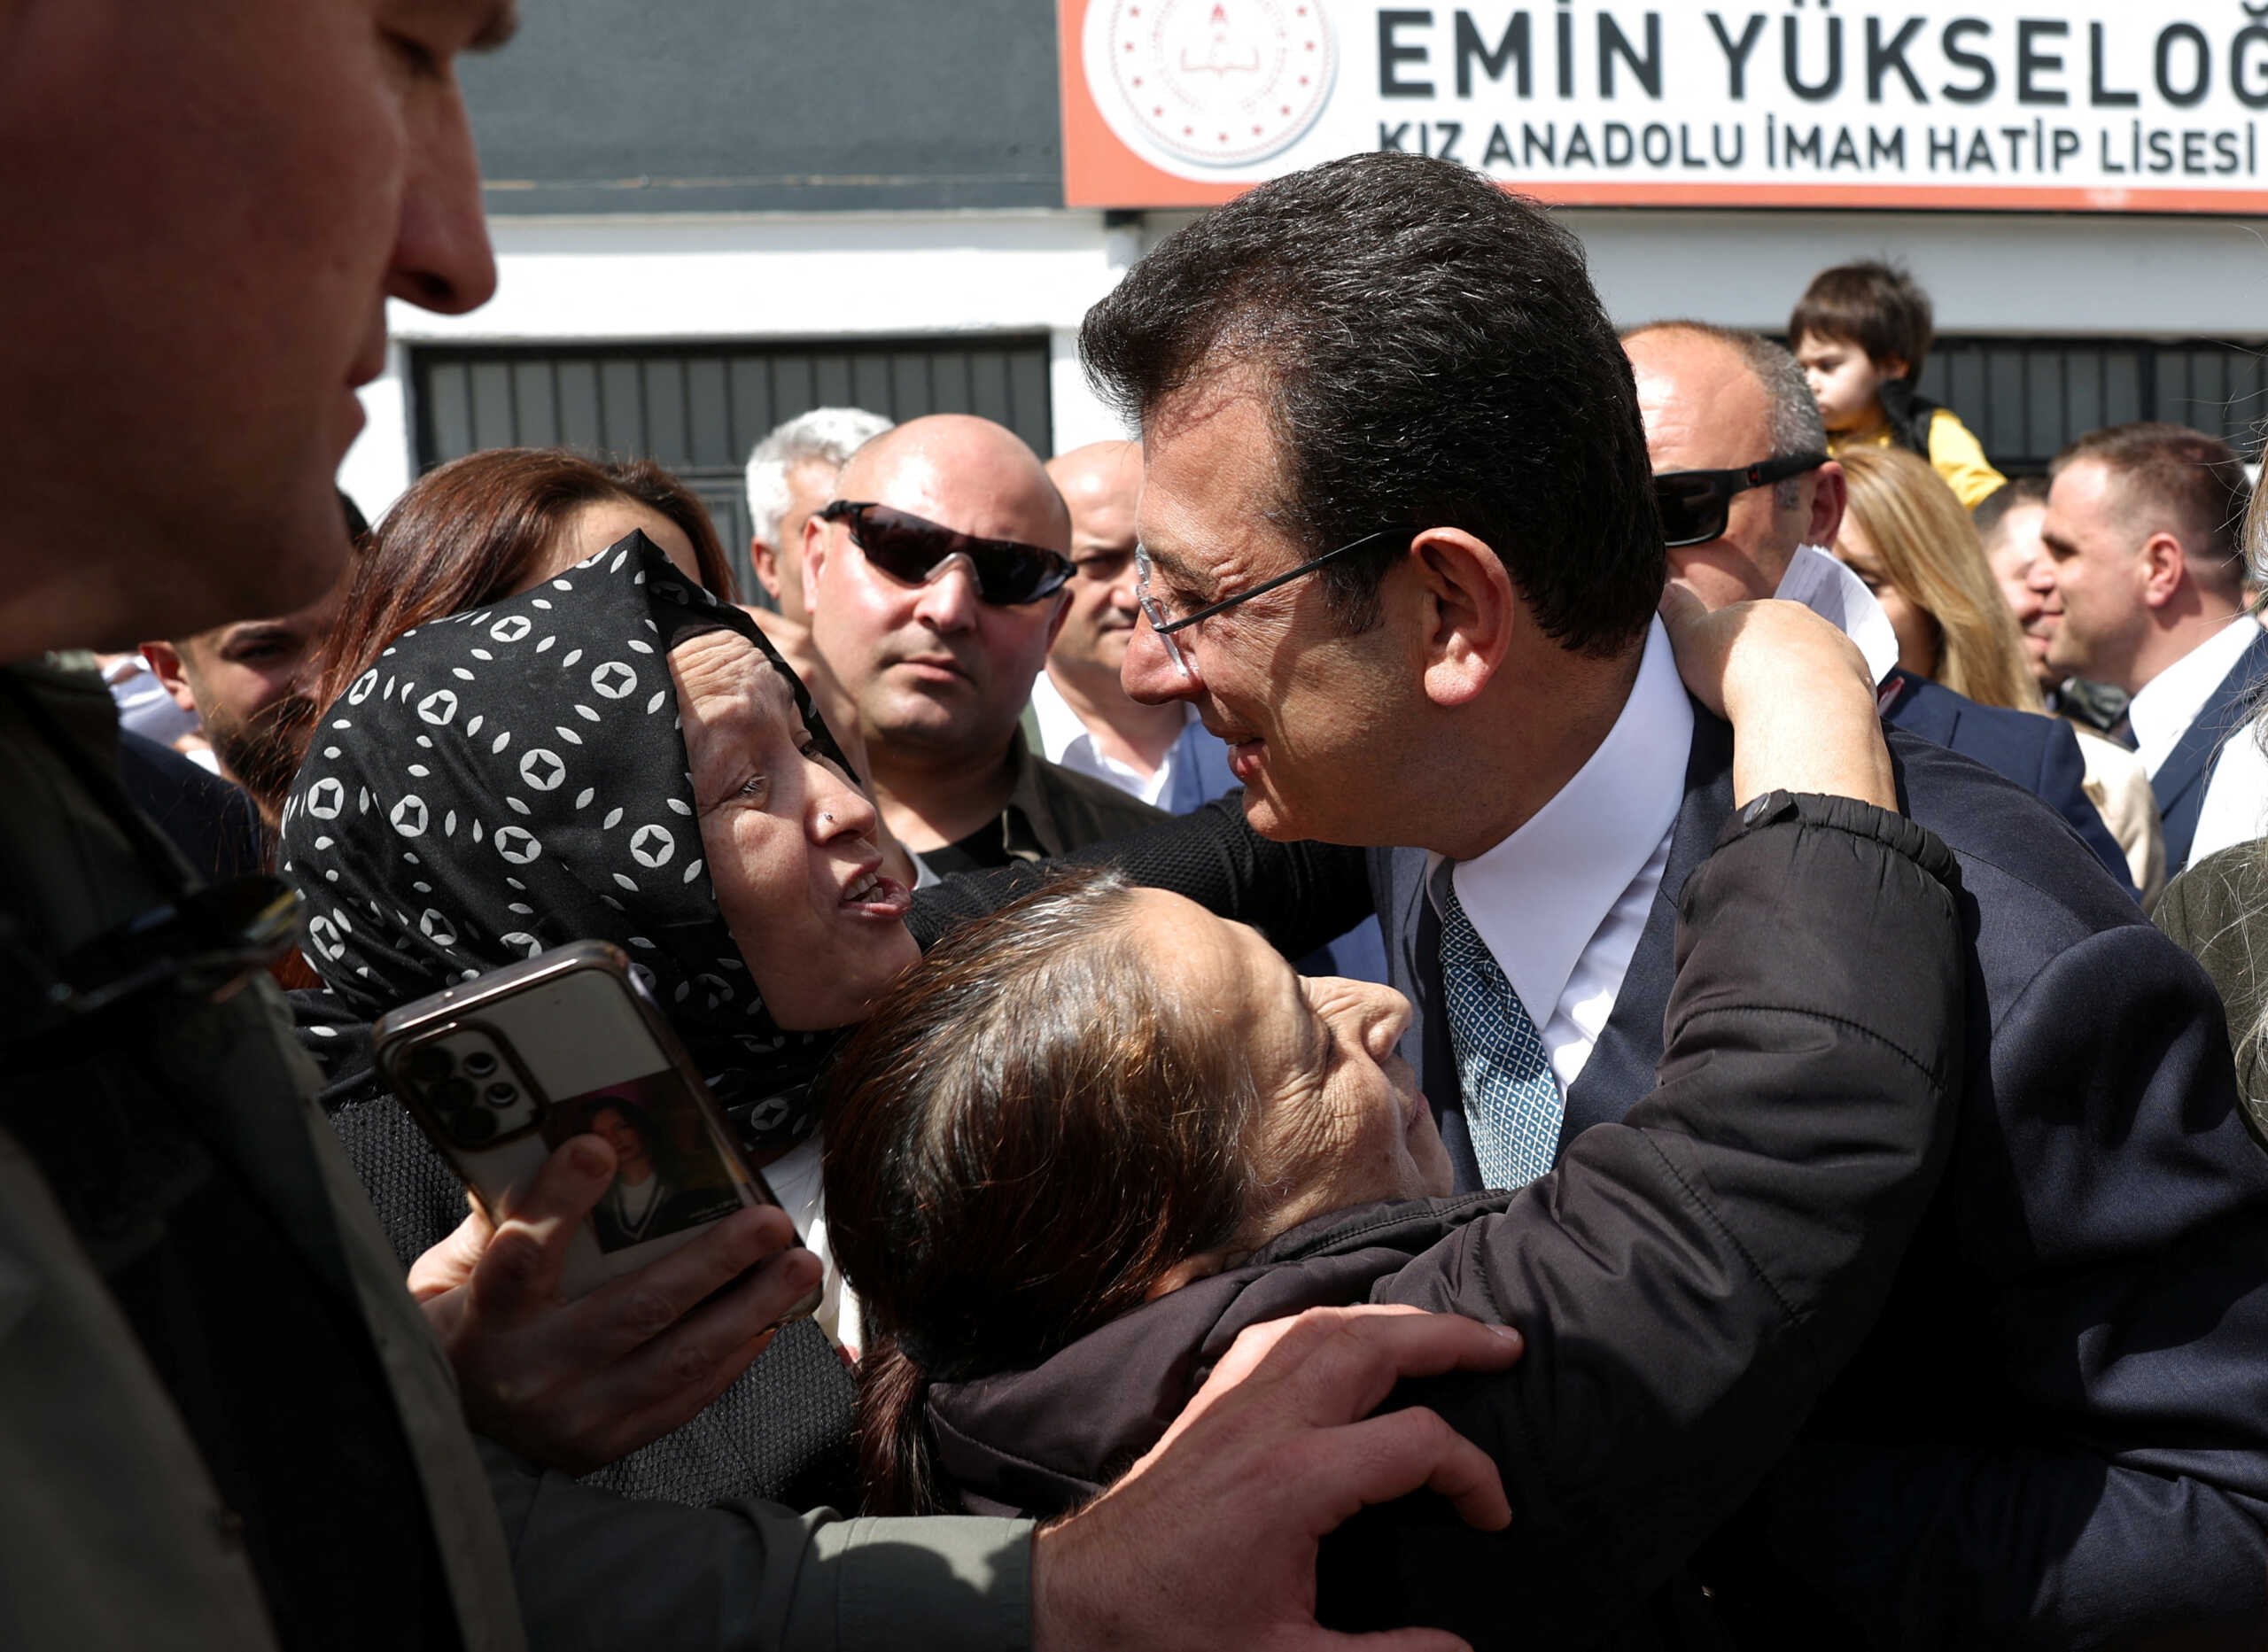 Δημοτικές εκλογές στην Τουρκία: Θρίαμβο Ιμάμογλου δείχνουν τα πρώτα στοιχεία